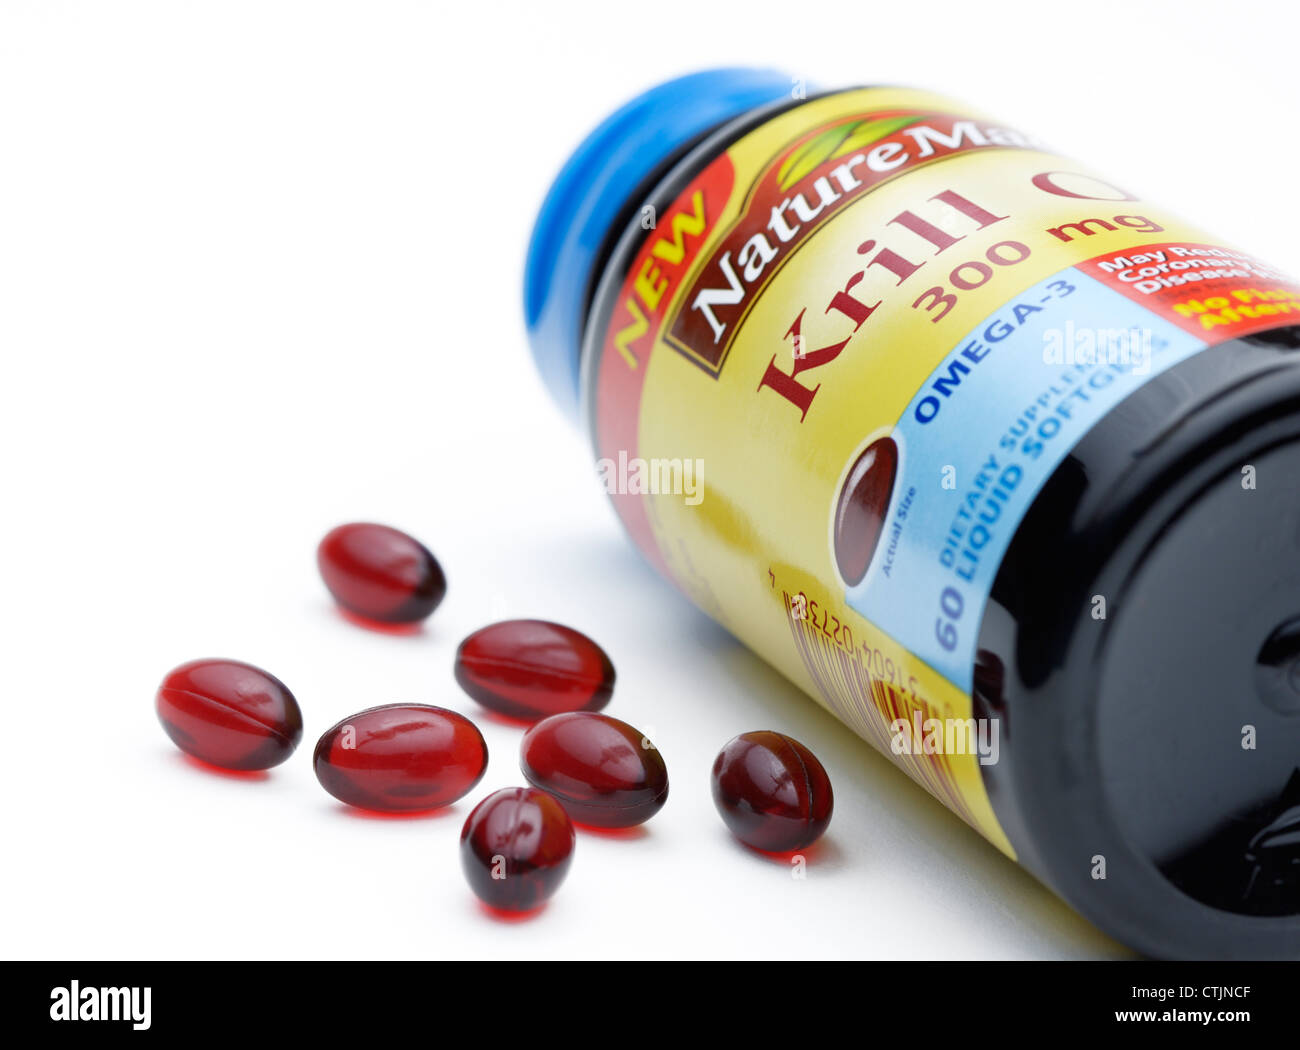 Pilules d'huile de krill, un supplément à une source d'acides gras oméga-3 Banque D'Images